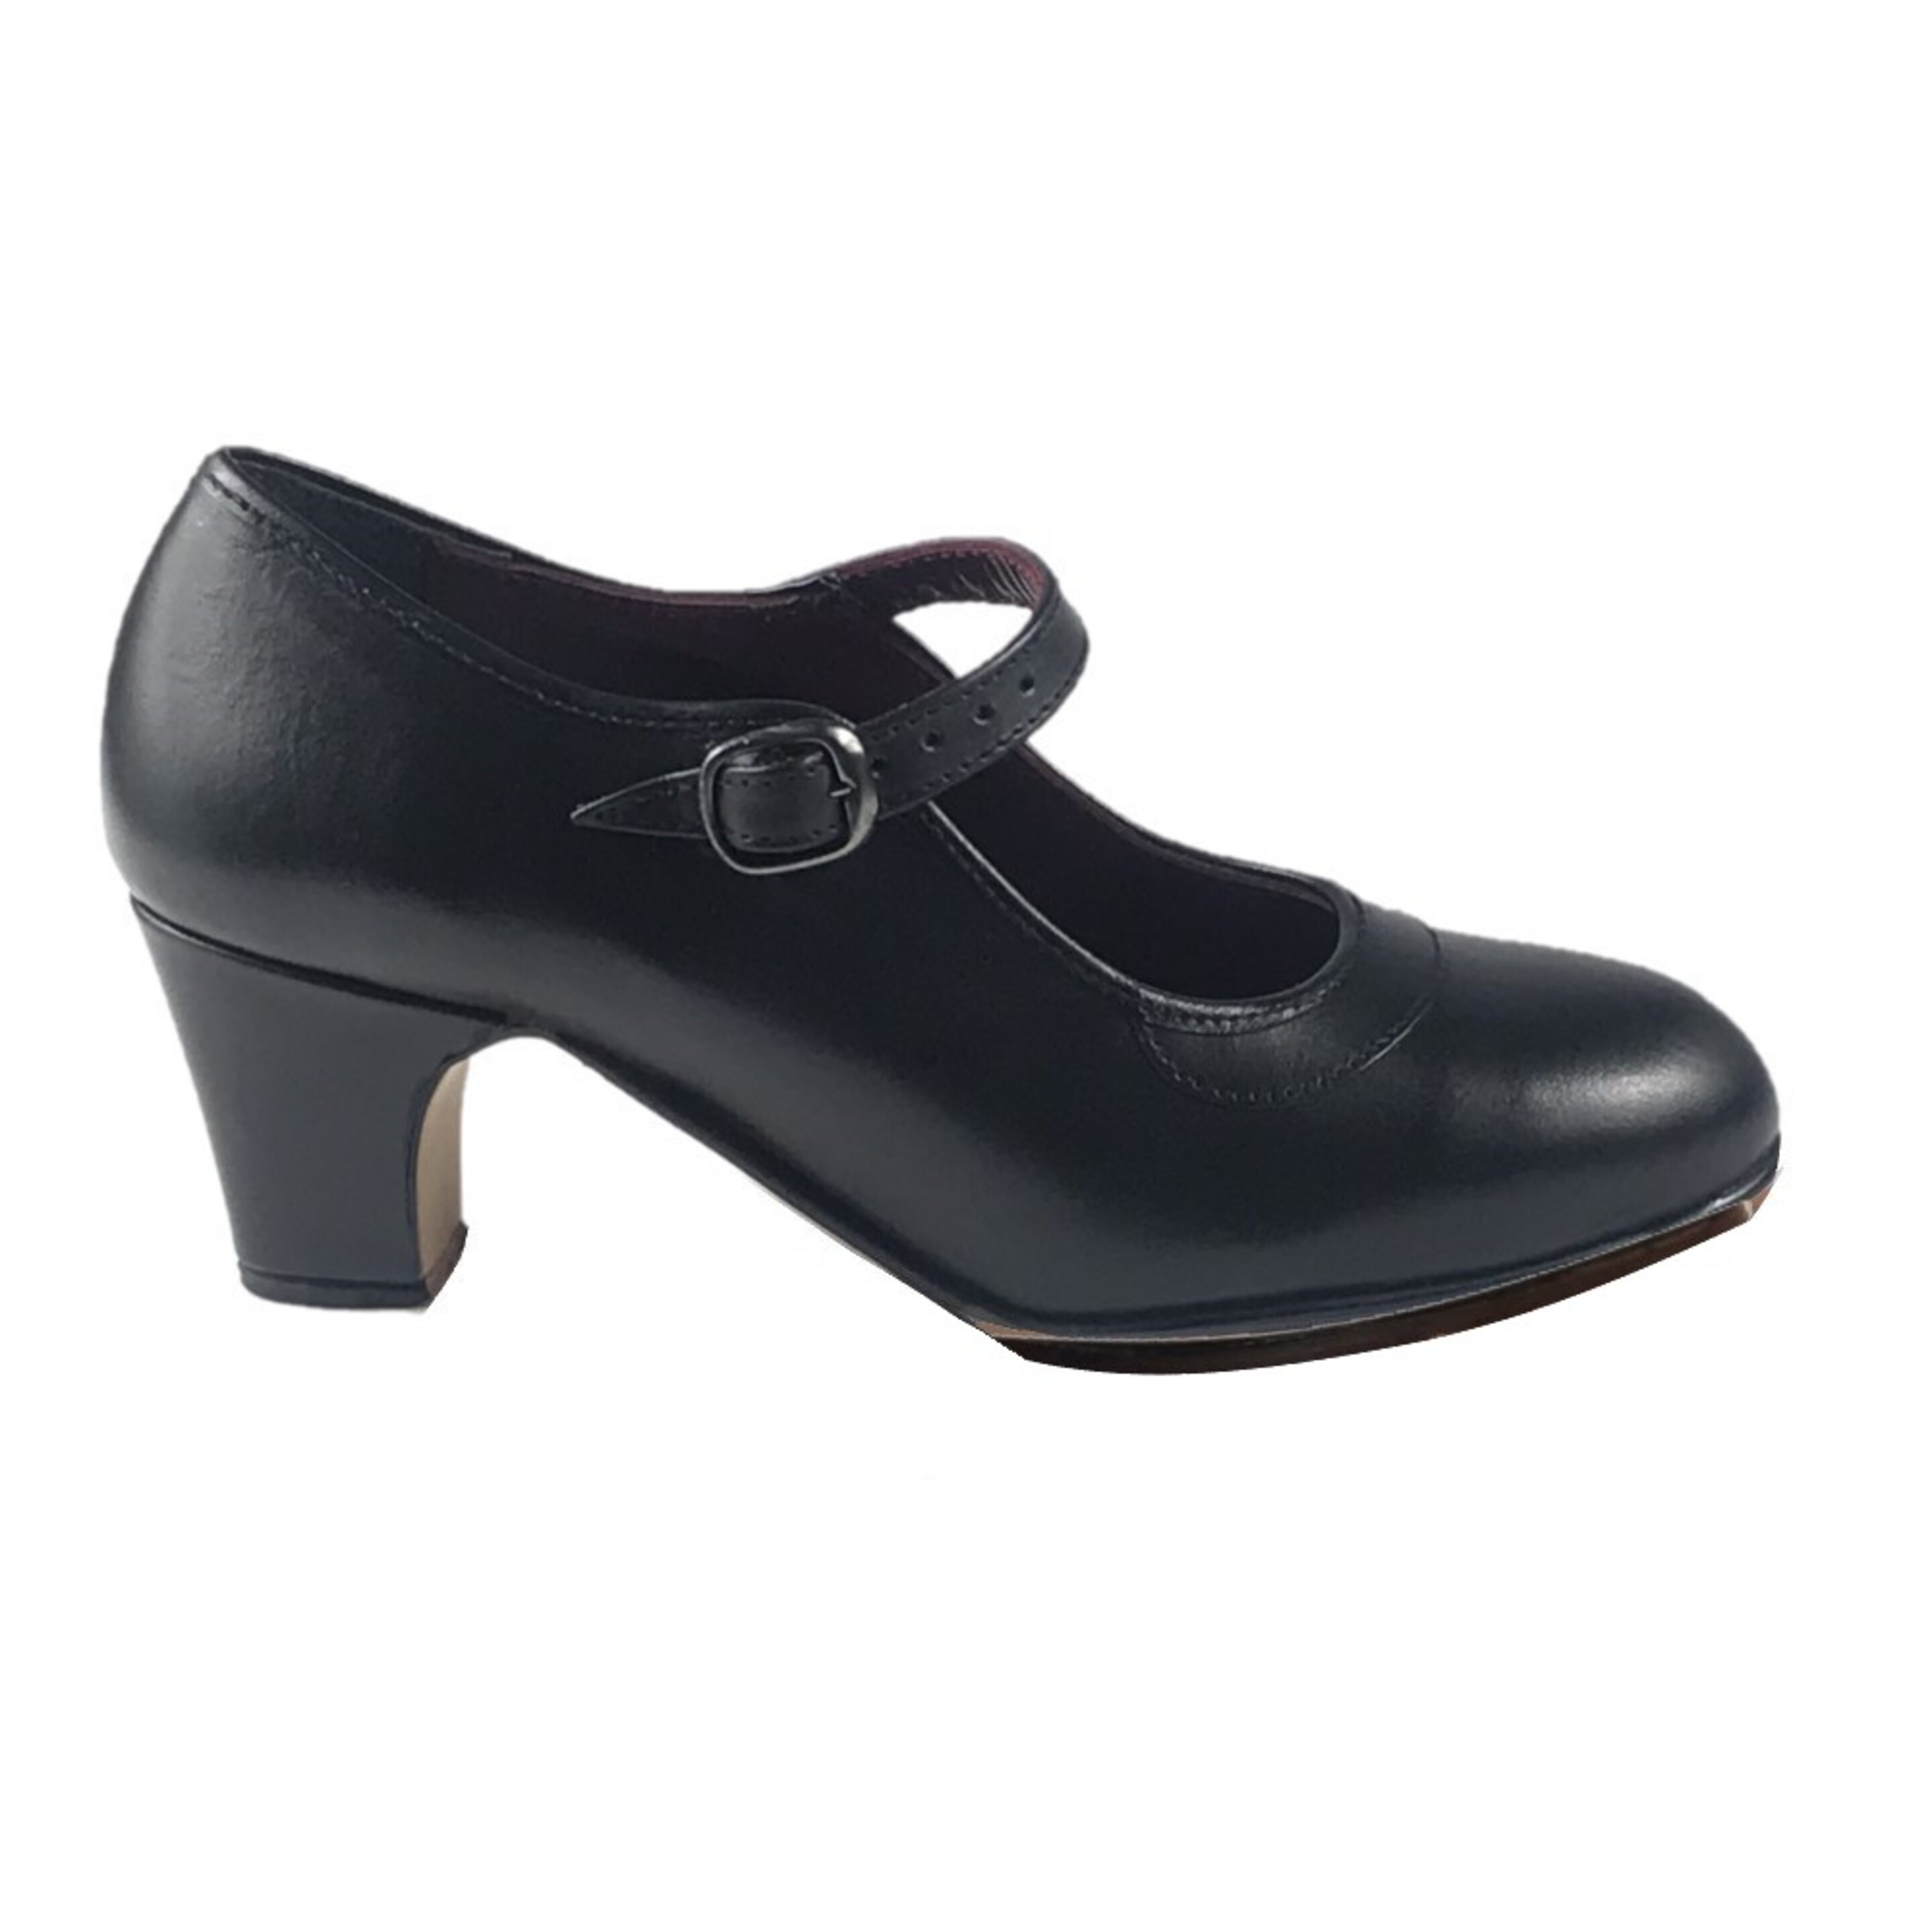 Zapatos Profesionales De Piel Con Doble Suela Para Baile Flamenco - negro - 